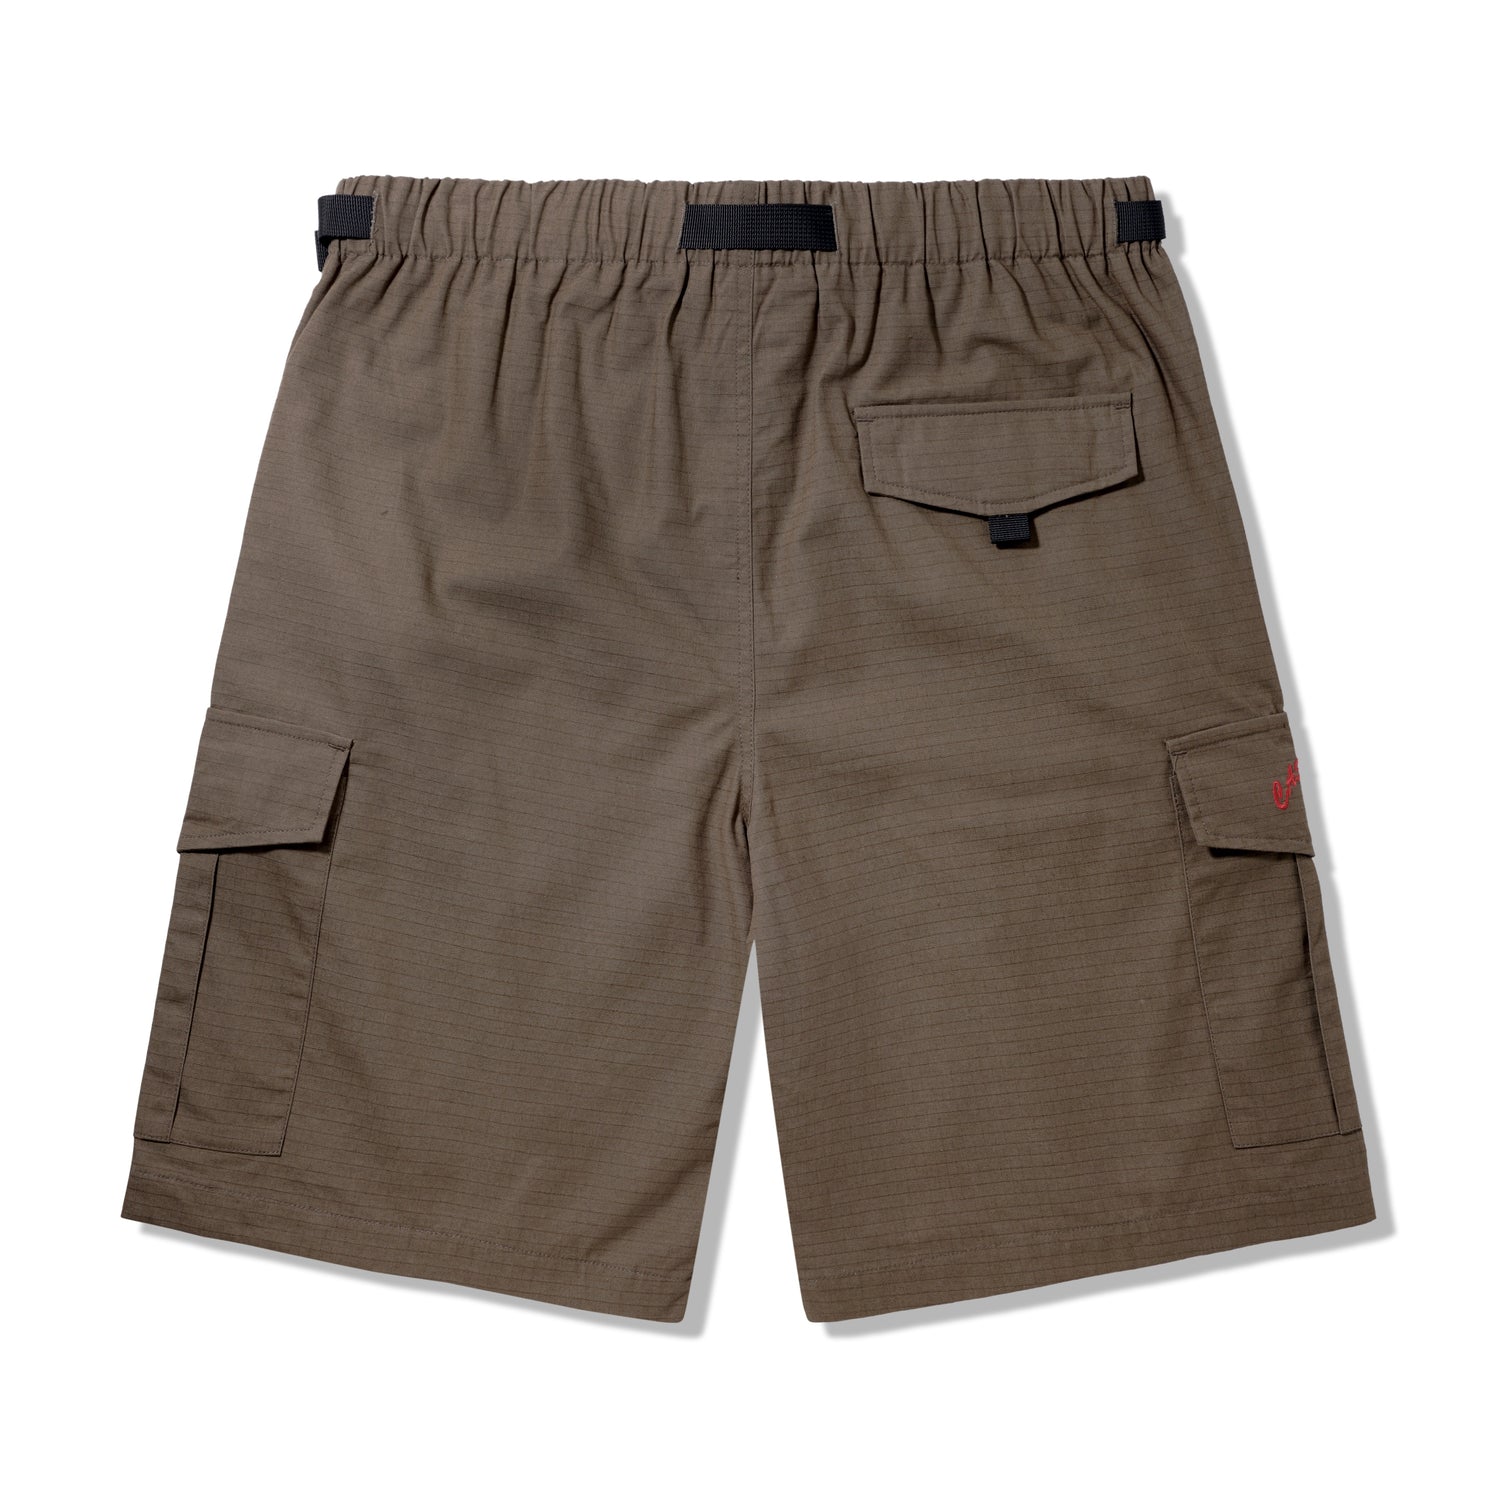 All Terrain Cargo Shorts, Brown